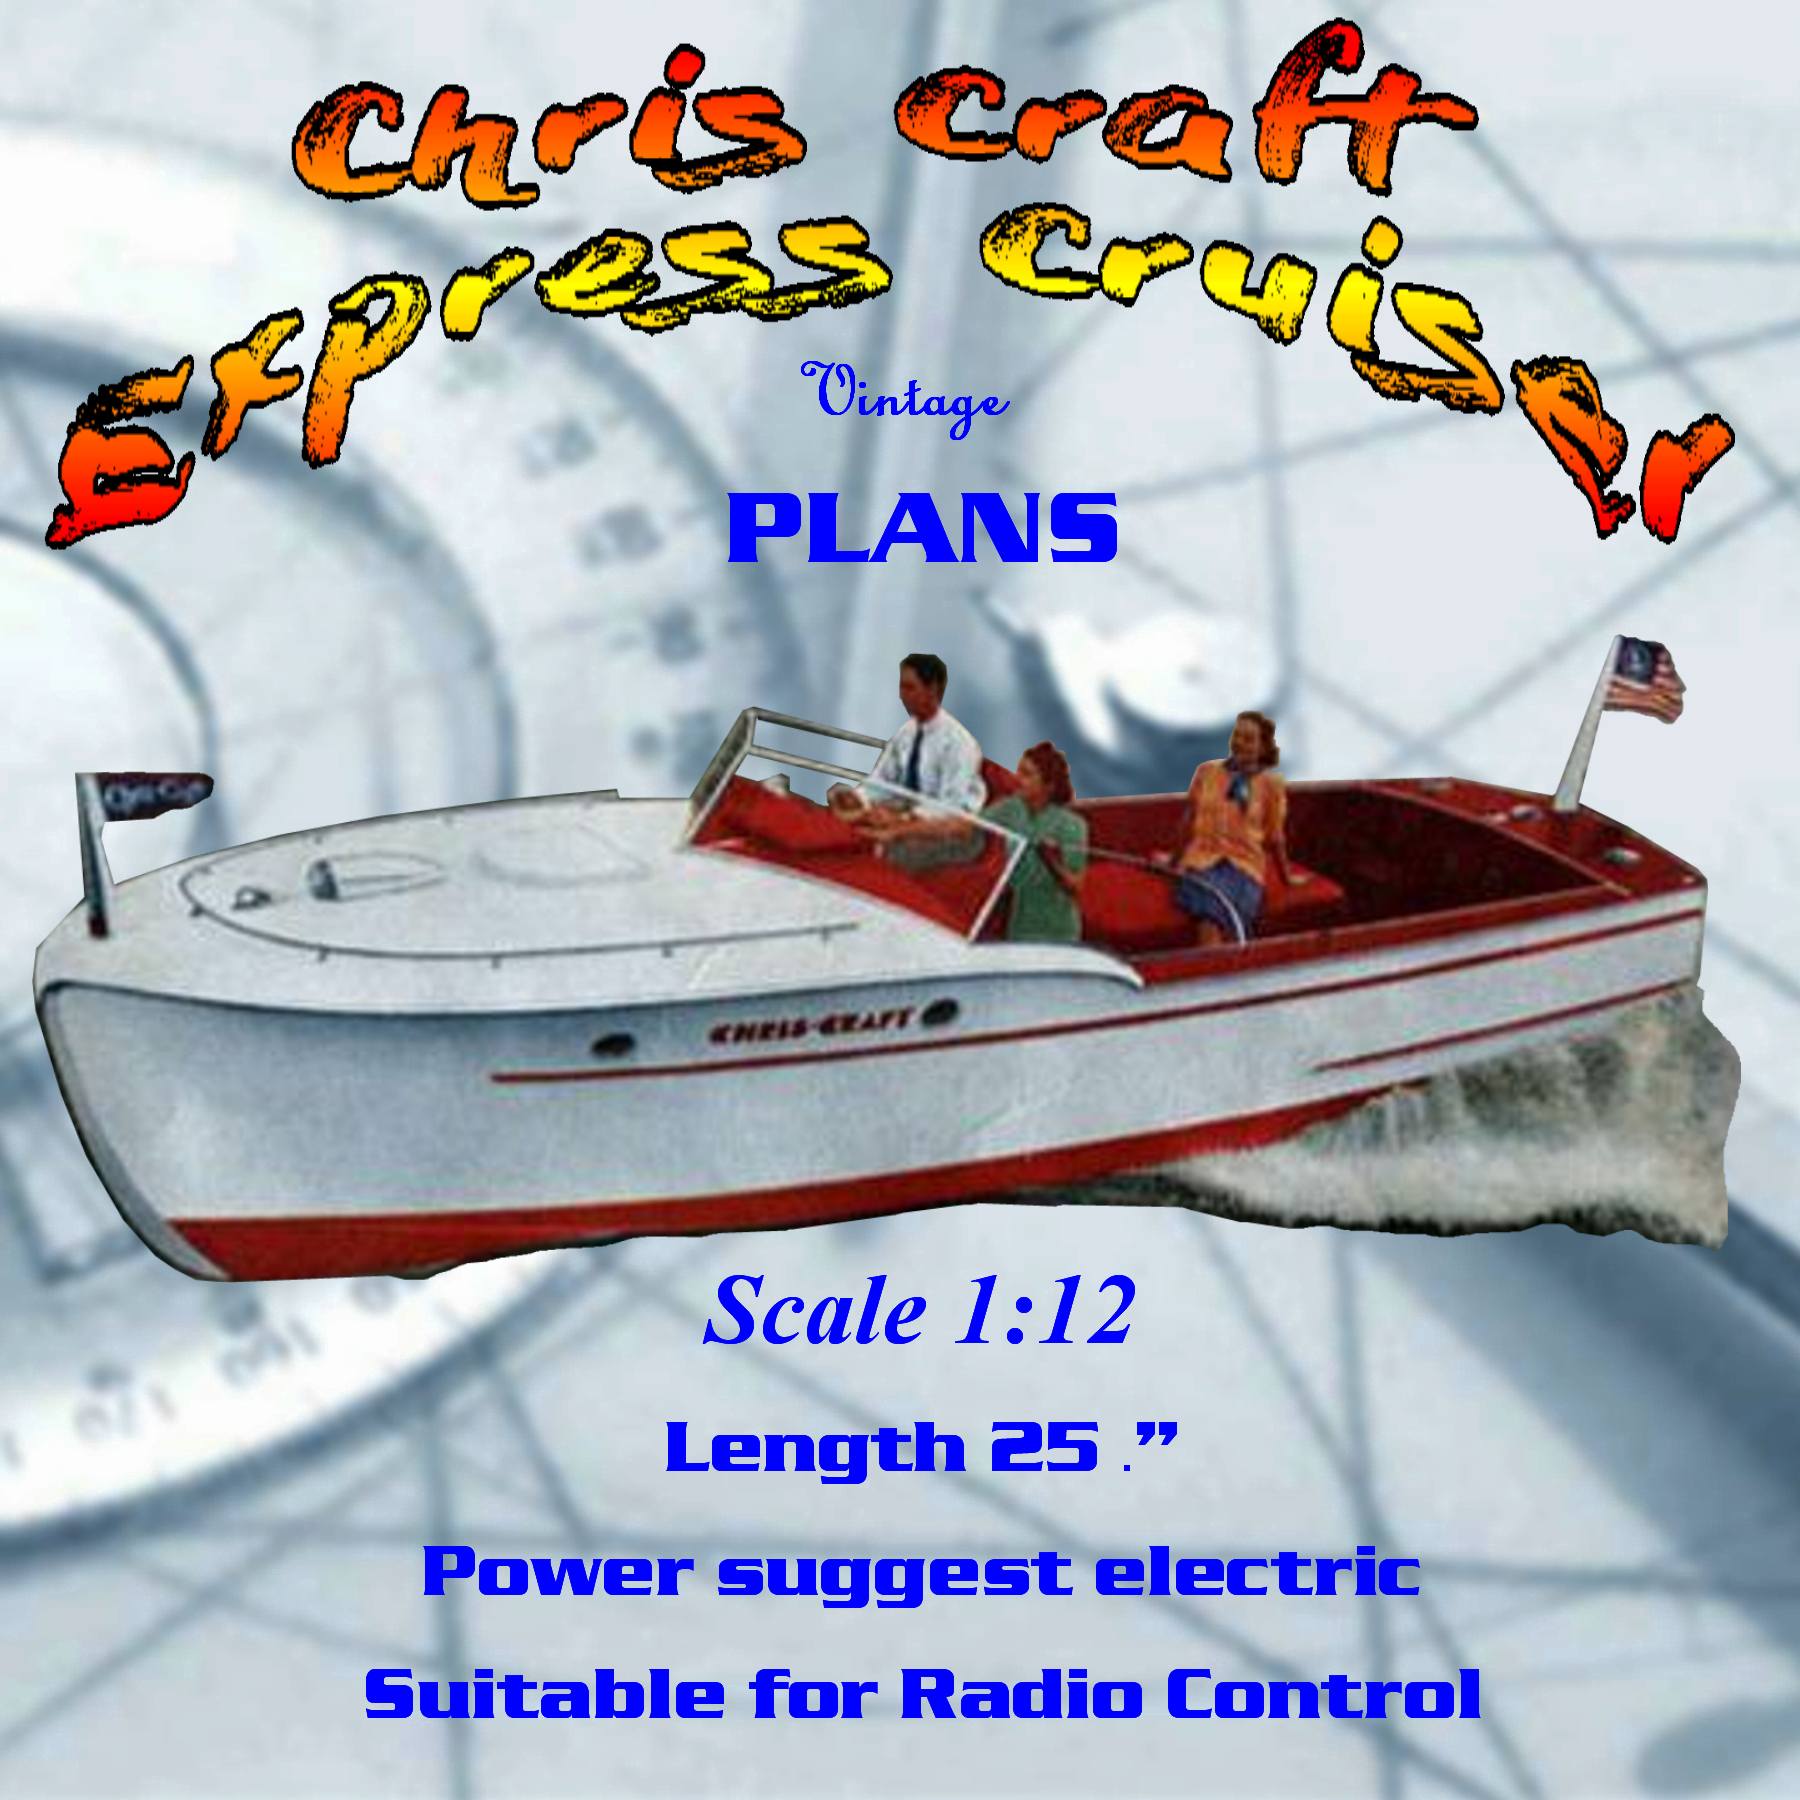 full size printed plan 25" 1:12 dumas chris craft express cruiser for radio control